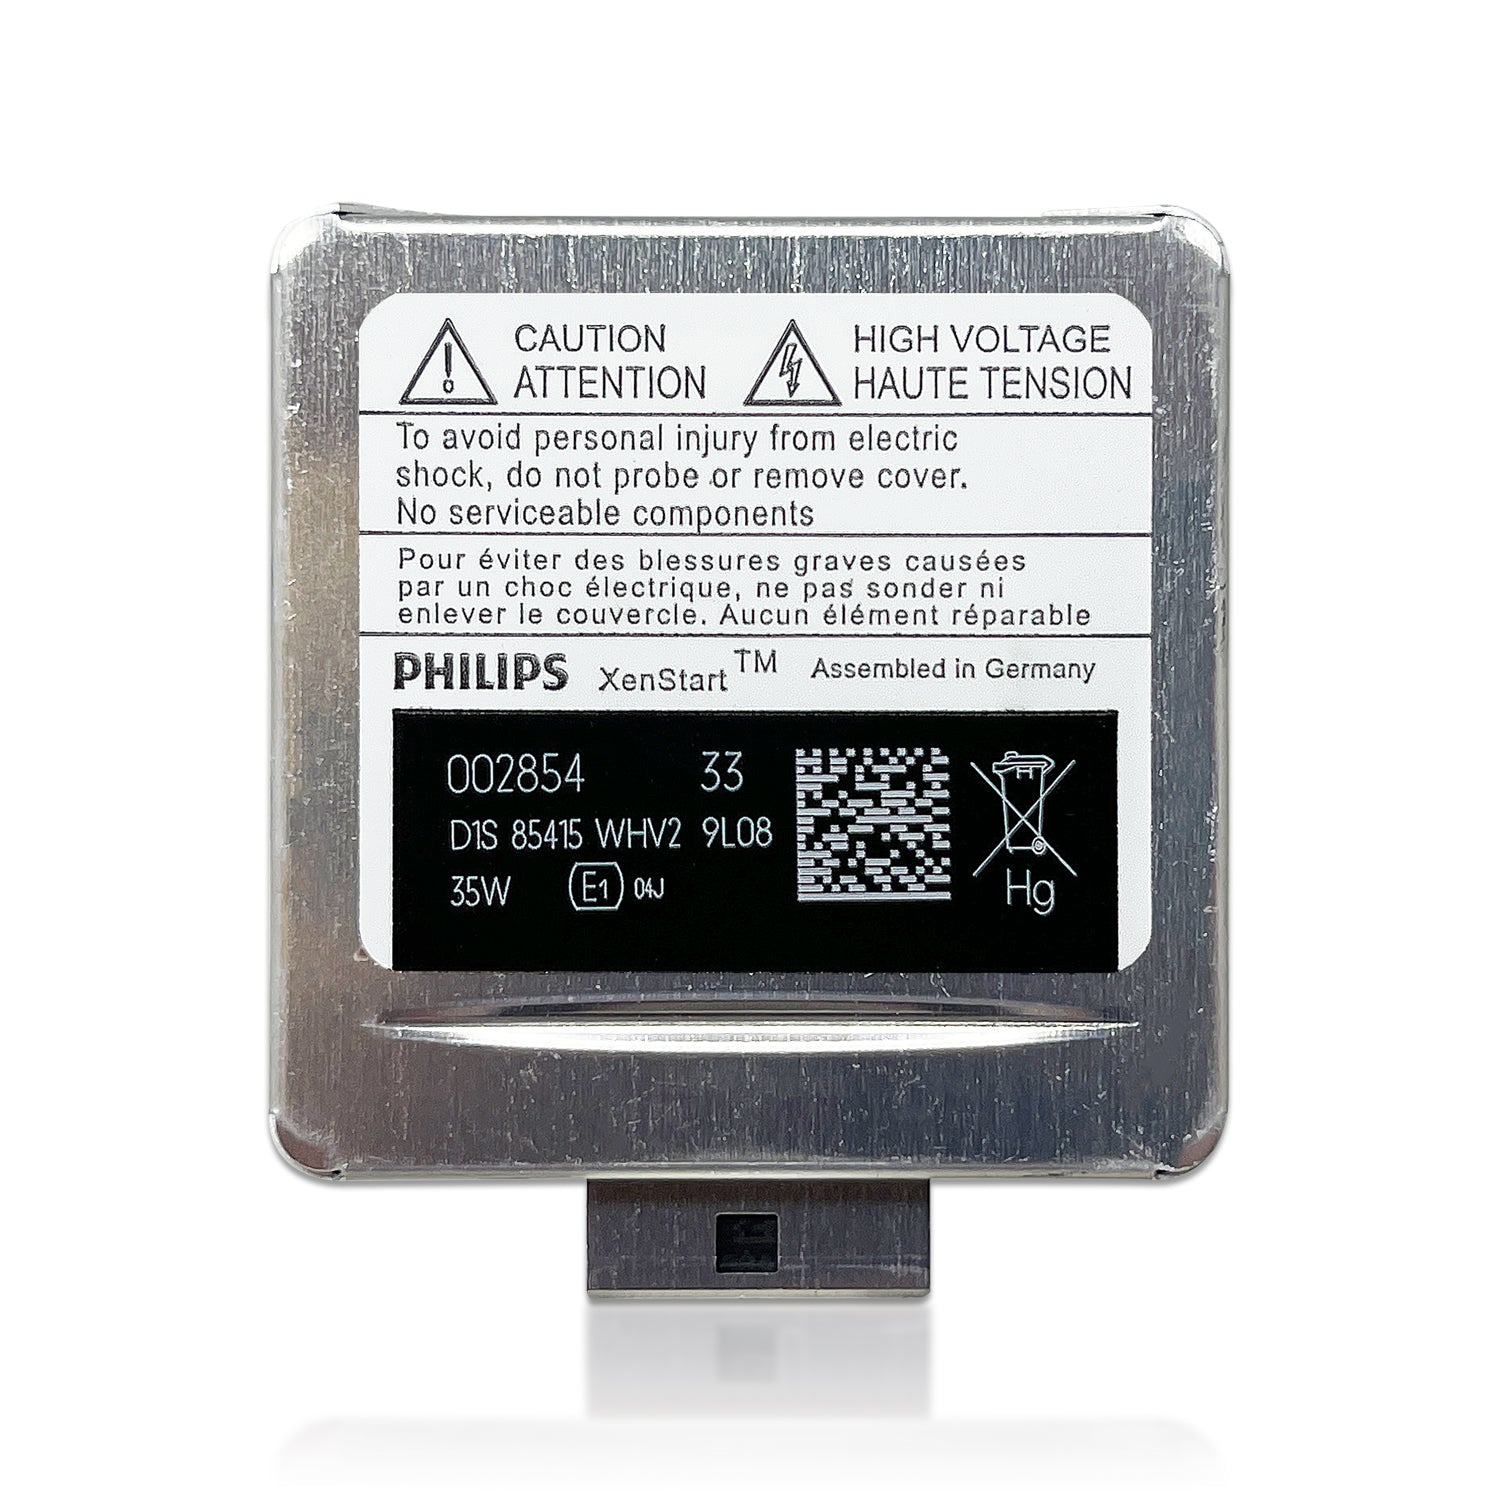 Philips Xenon Whitevision Gen2 D1S, Ampoule Xéno…